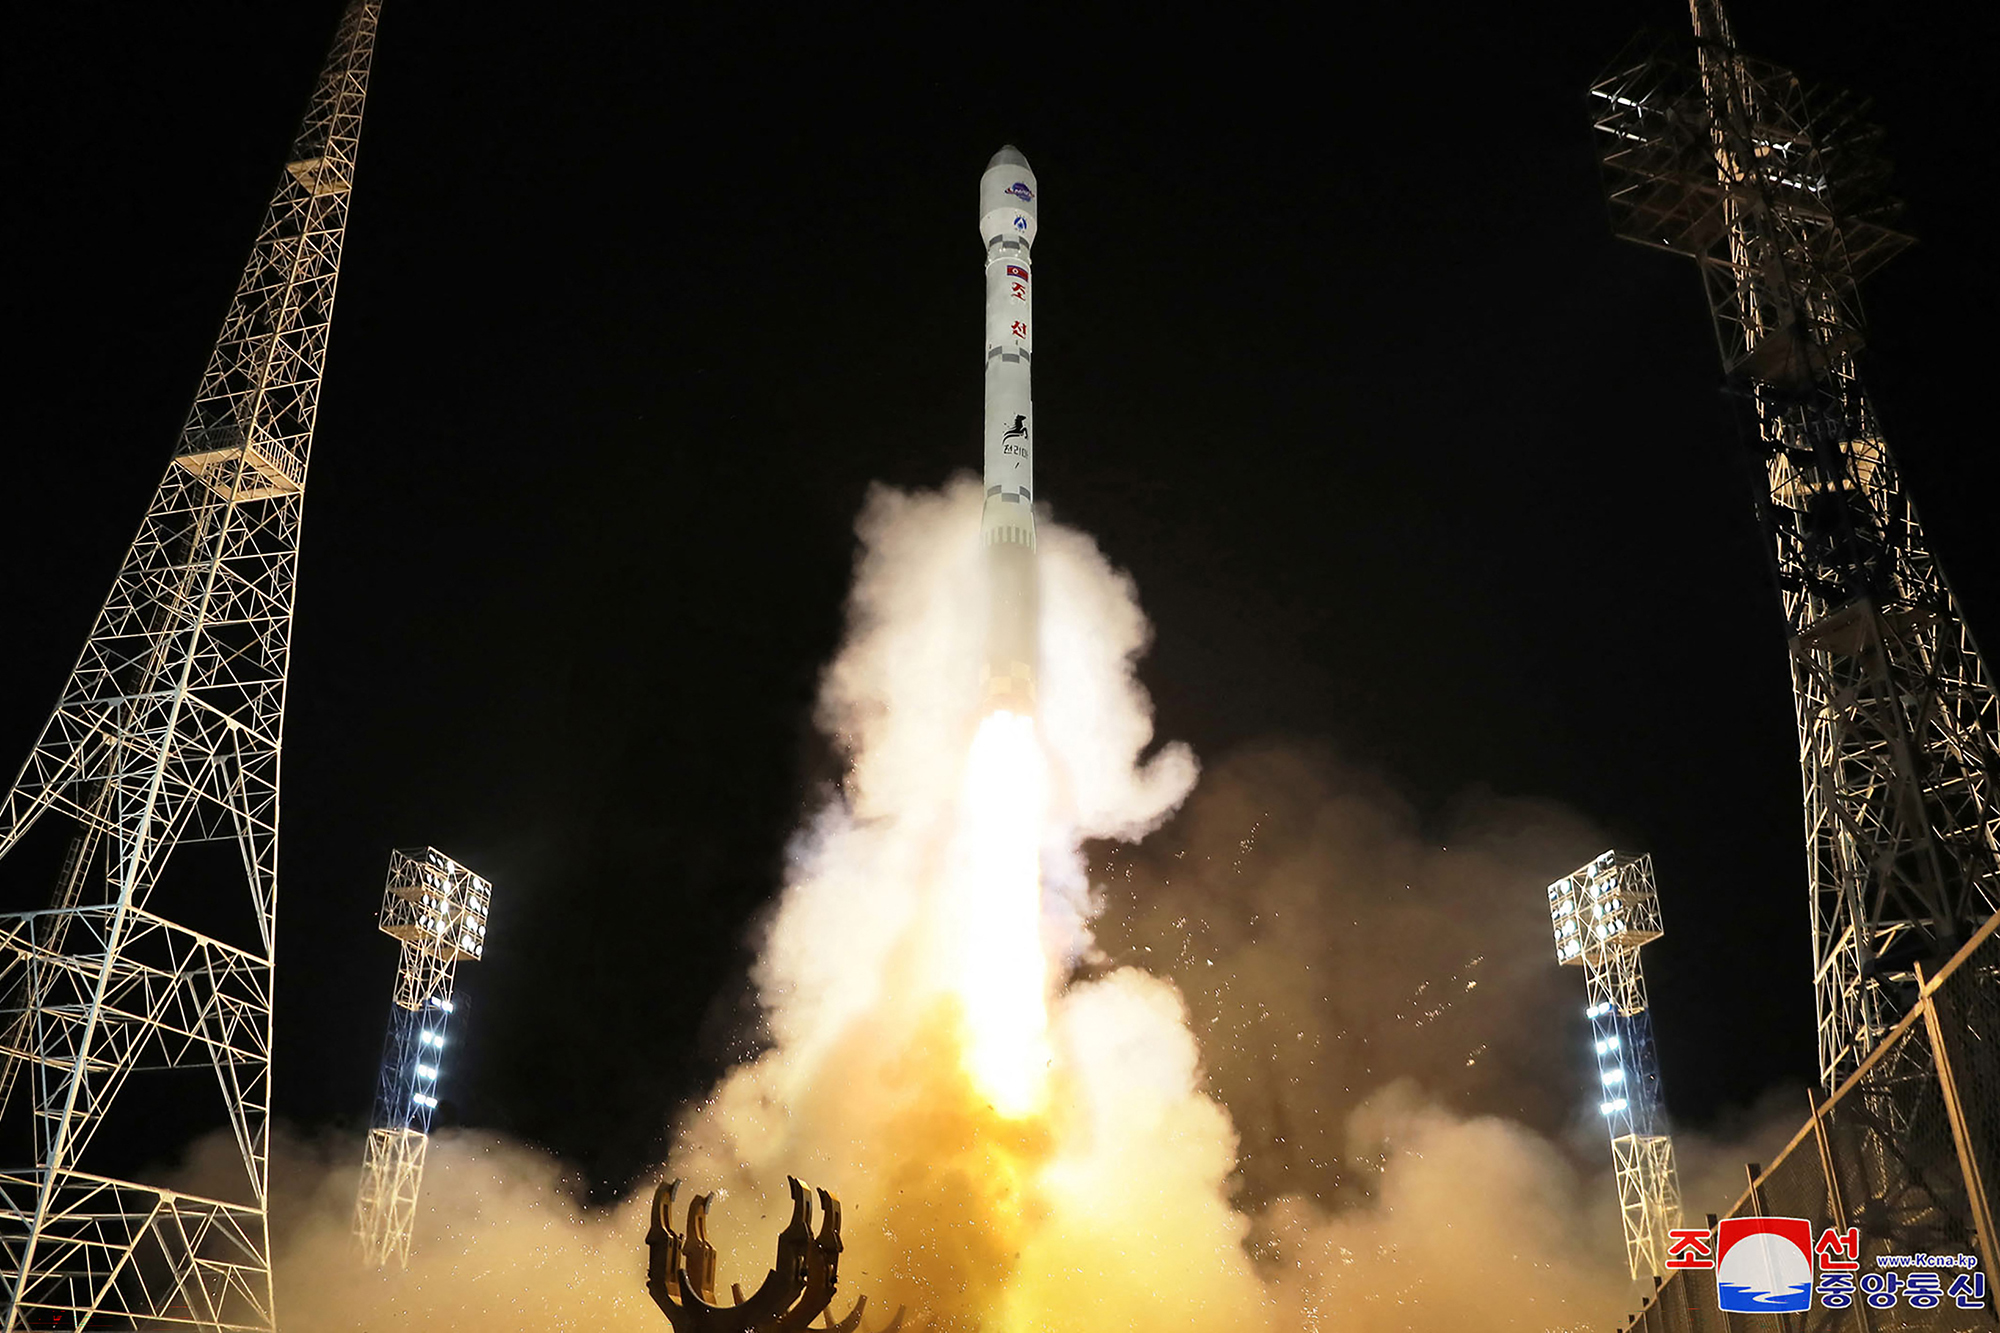 Das von Nordkoreas offizieller Zentraler Nachrichtenagentur (KCNA) veröffentlichte Bild zeigt eine Rakete mit dem Aufklärungssatelliten "Malligyong-1", die von der Sohae Satellite Launch Site in der Provinz Nord-Phyongan gestartet wurde (Bild: STR/KCNA via KNS/AFP)